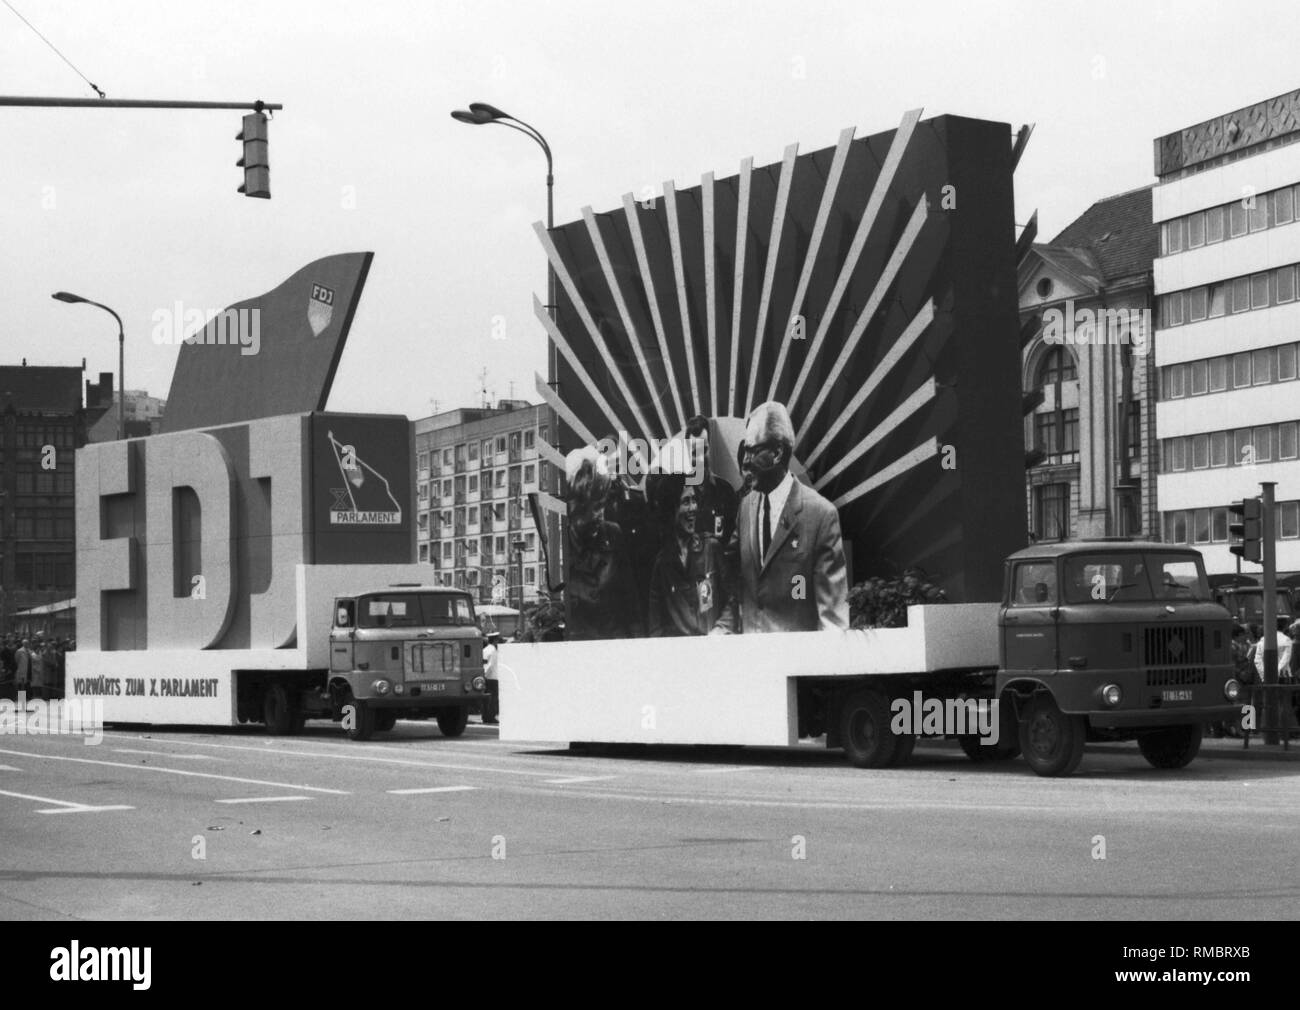 Campagne publicitaire de la FDJ pour le 10e Parlement de la RDA, mouvement de jeunes du 1er juin au 5 septembre, 1976 à Berlin Est. Photo à partir de 1er mars 1969. Banque D'Images